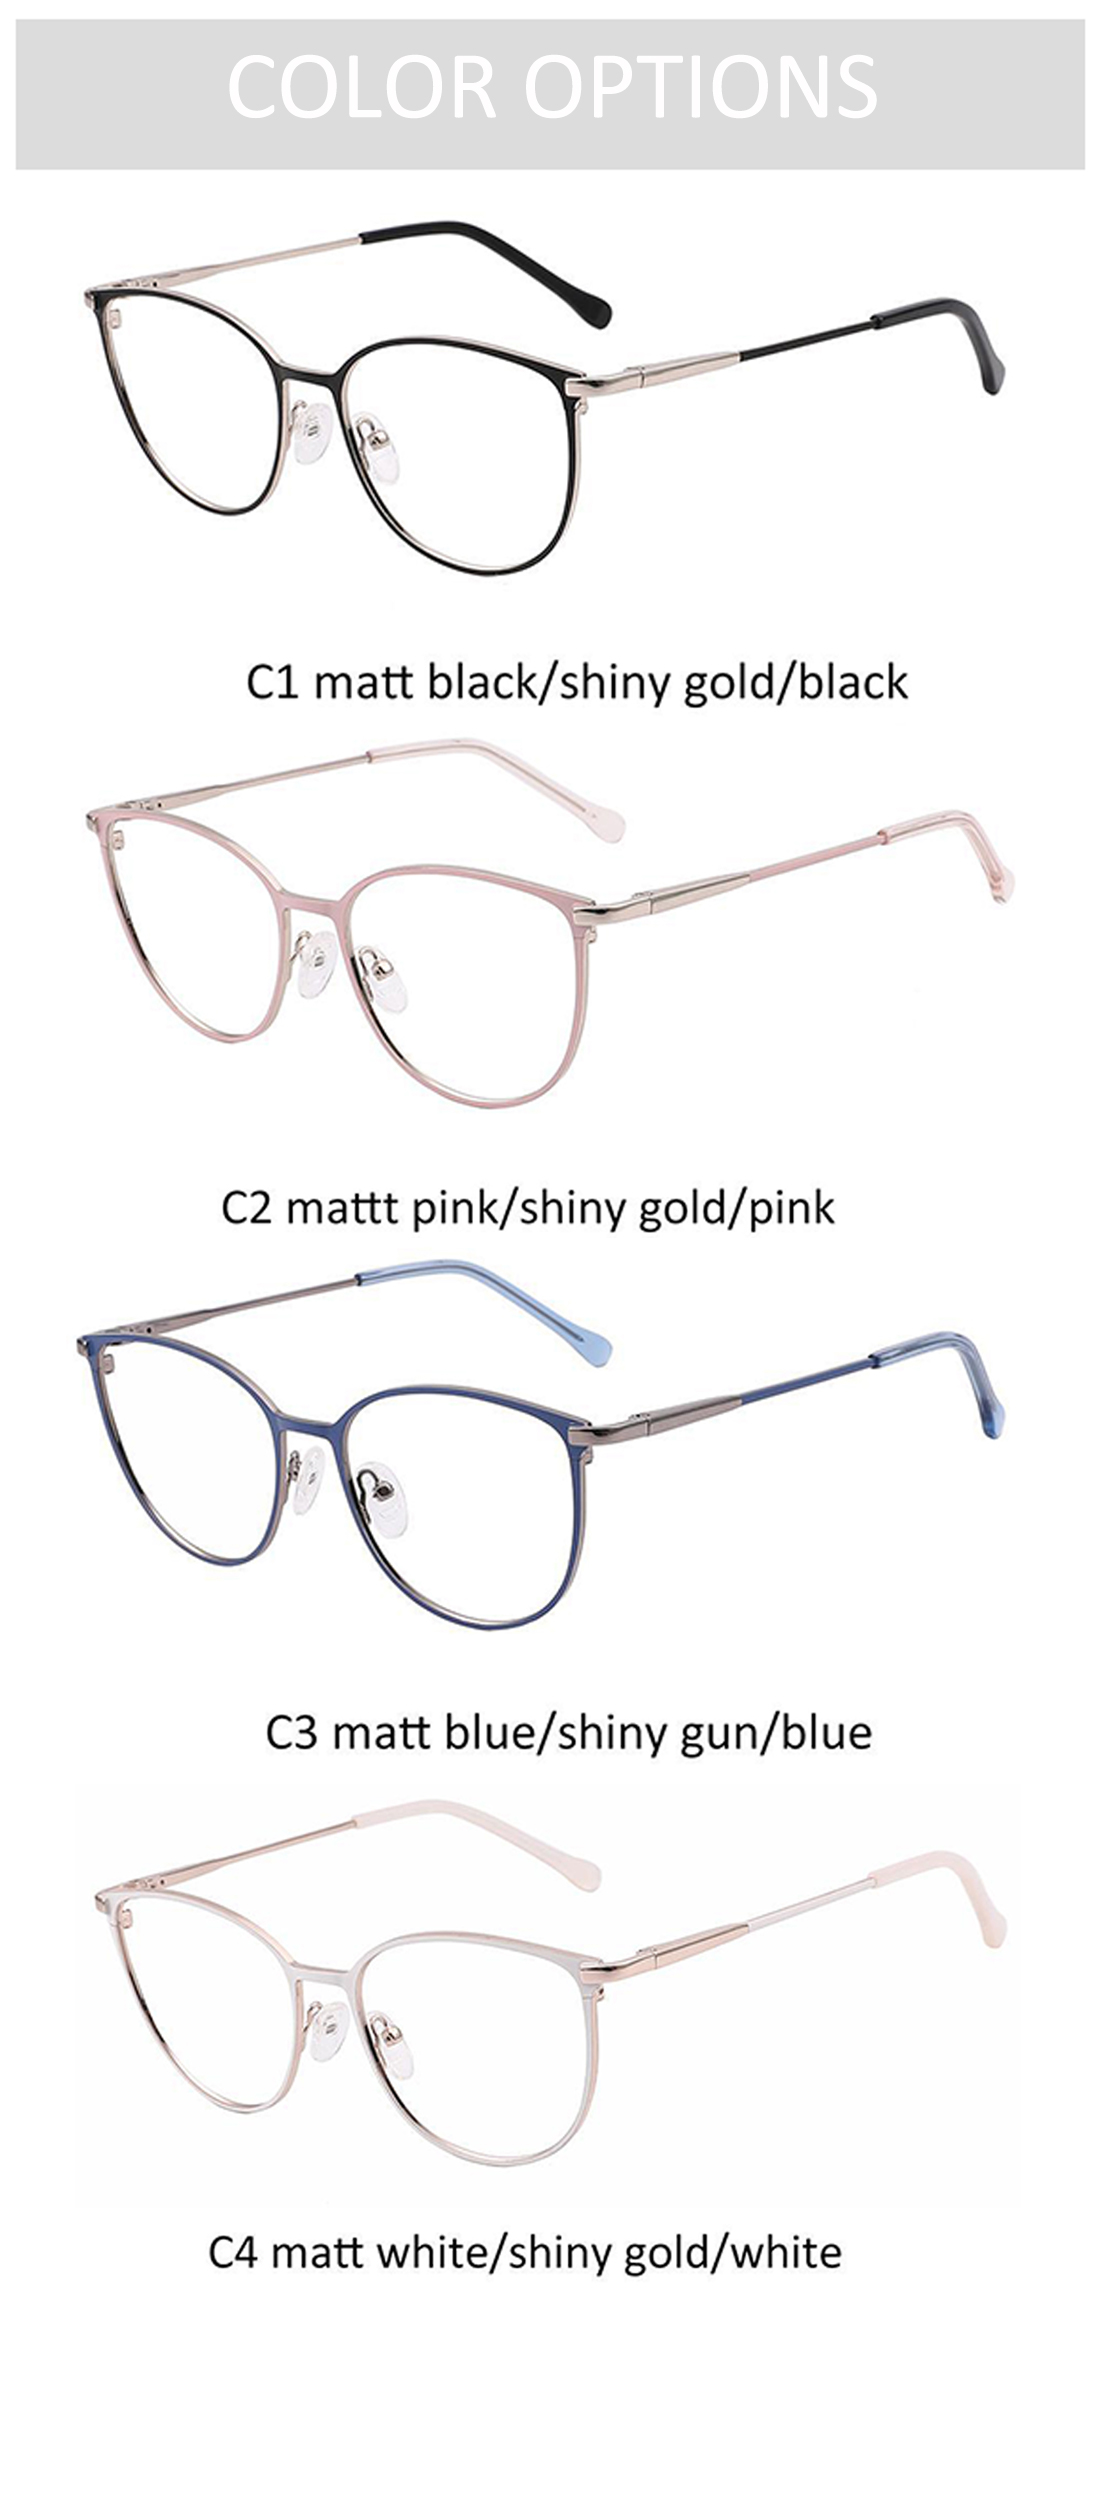 Optical Eyeglasses Ford Fashion Metal Eyewear